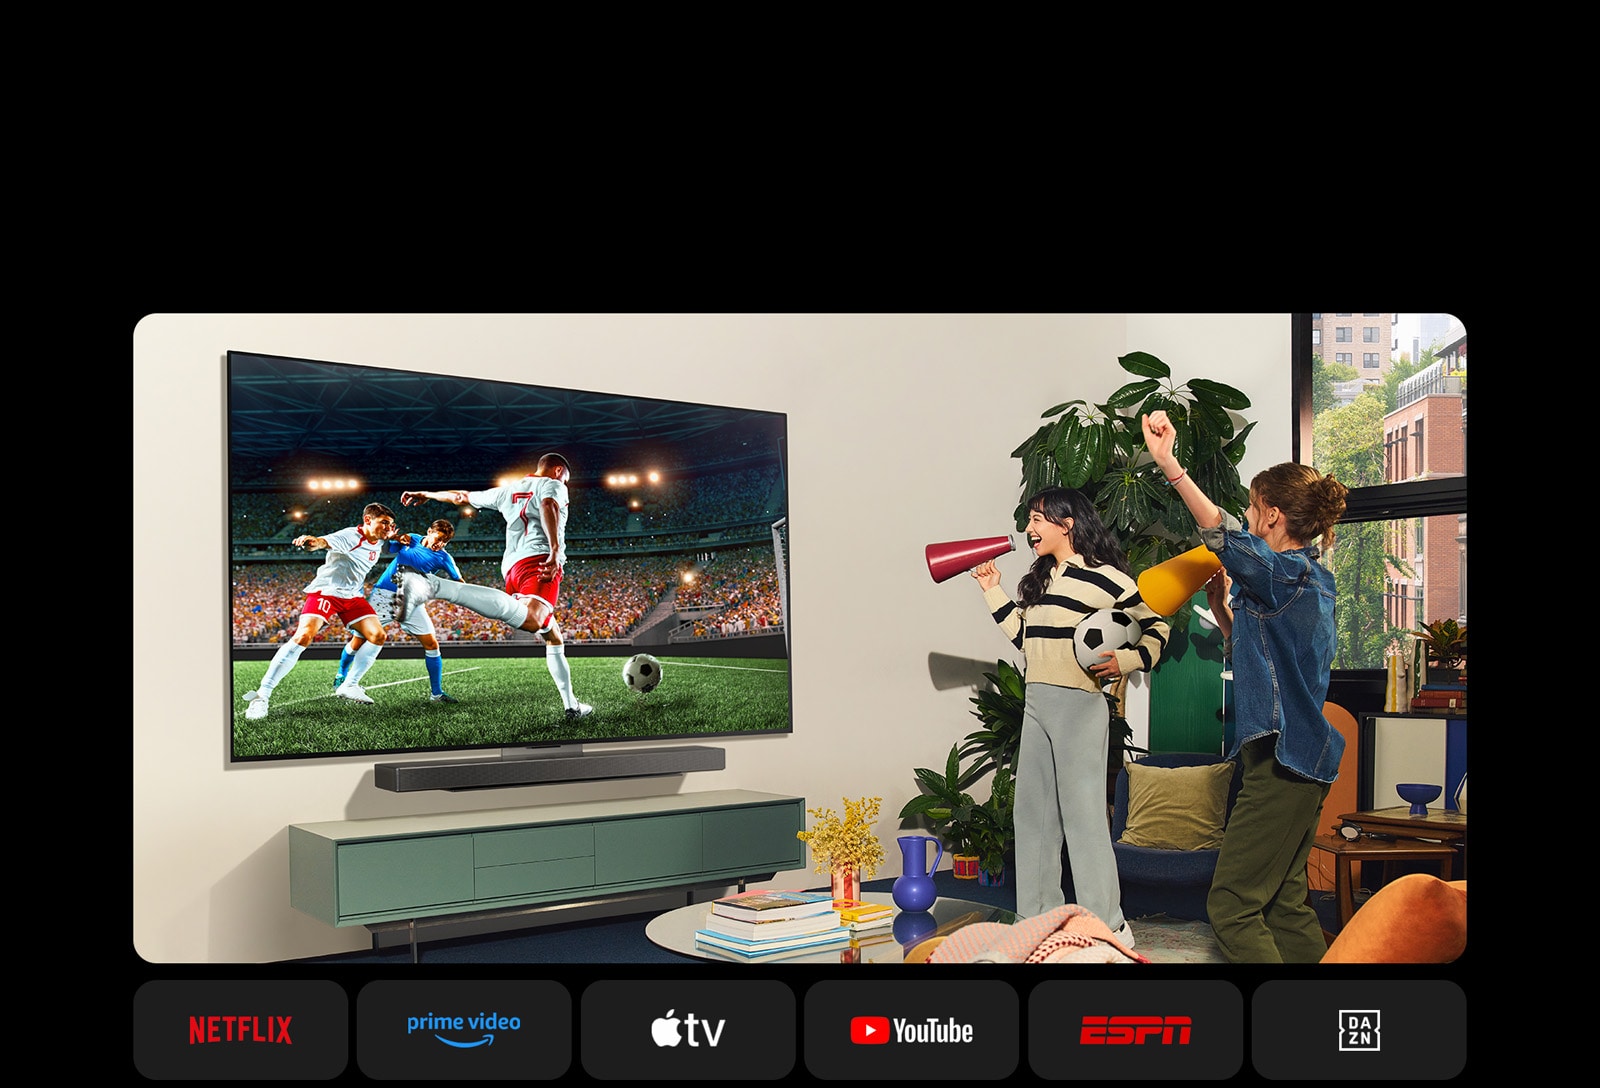 Zwei Frauen schauen in einem gemütlichen Wohnzimmer Fußball. Eine der Frauen hält einen Fußball und beide feuern ihre Mannschaft mit gelb-roten Lautsprechern an. Unterhalb werden folgende Logos angezeigt: Netflix, Amazon Prime Video, Apple TV, Youtube, ESPN und DAZN.